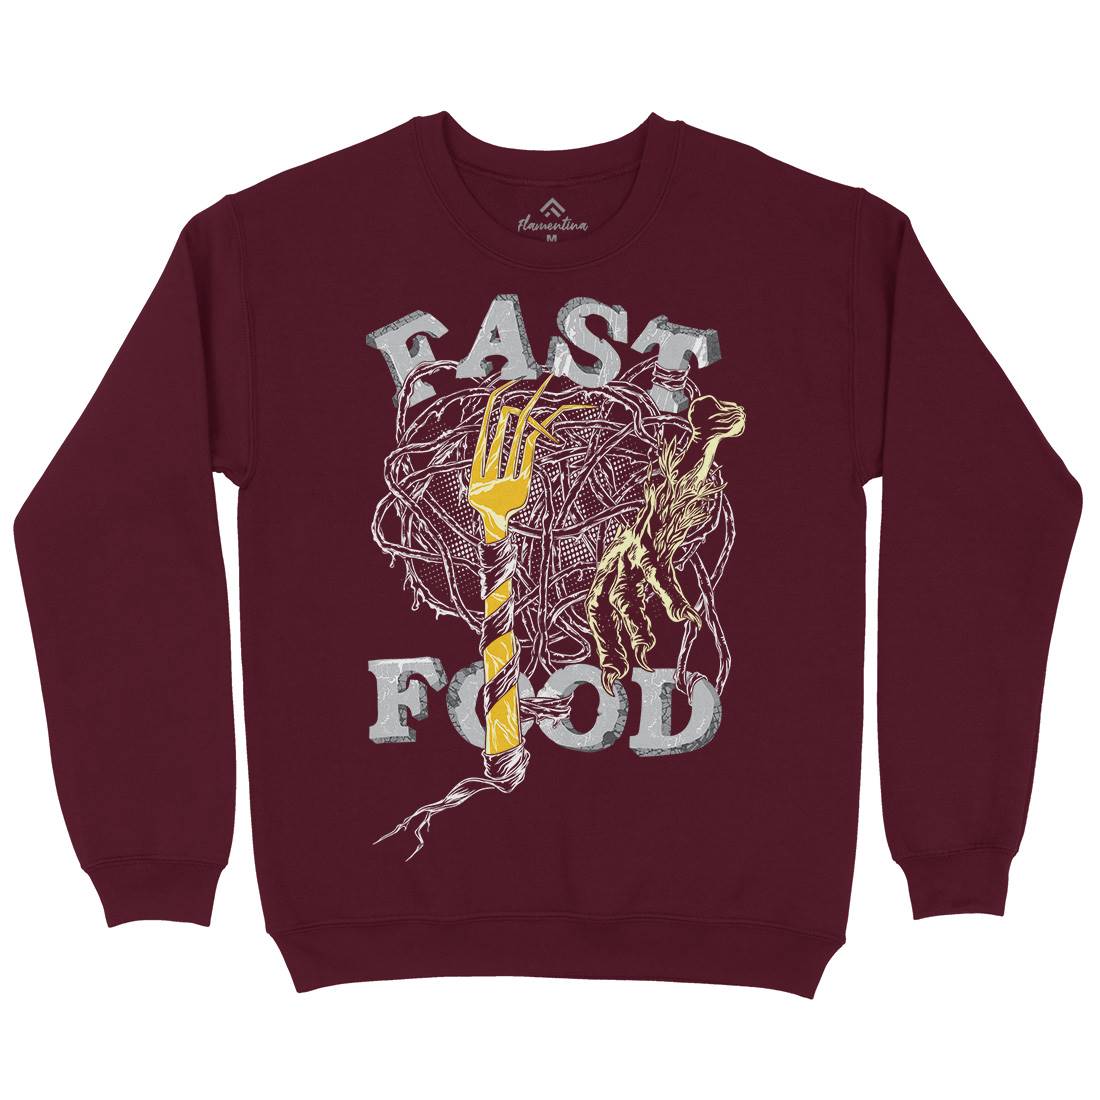 Fast Kids Crew Neck Sweatshirt Food C931